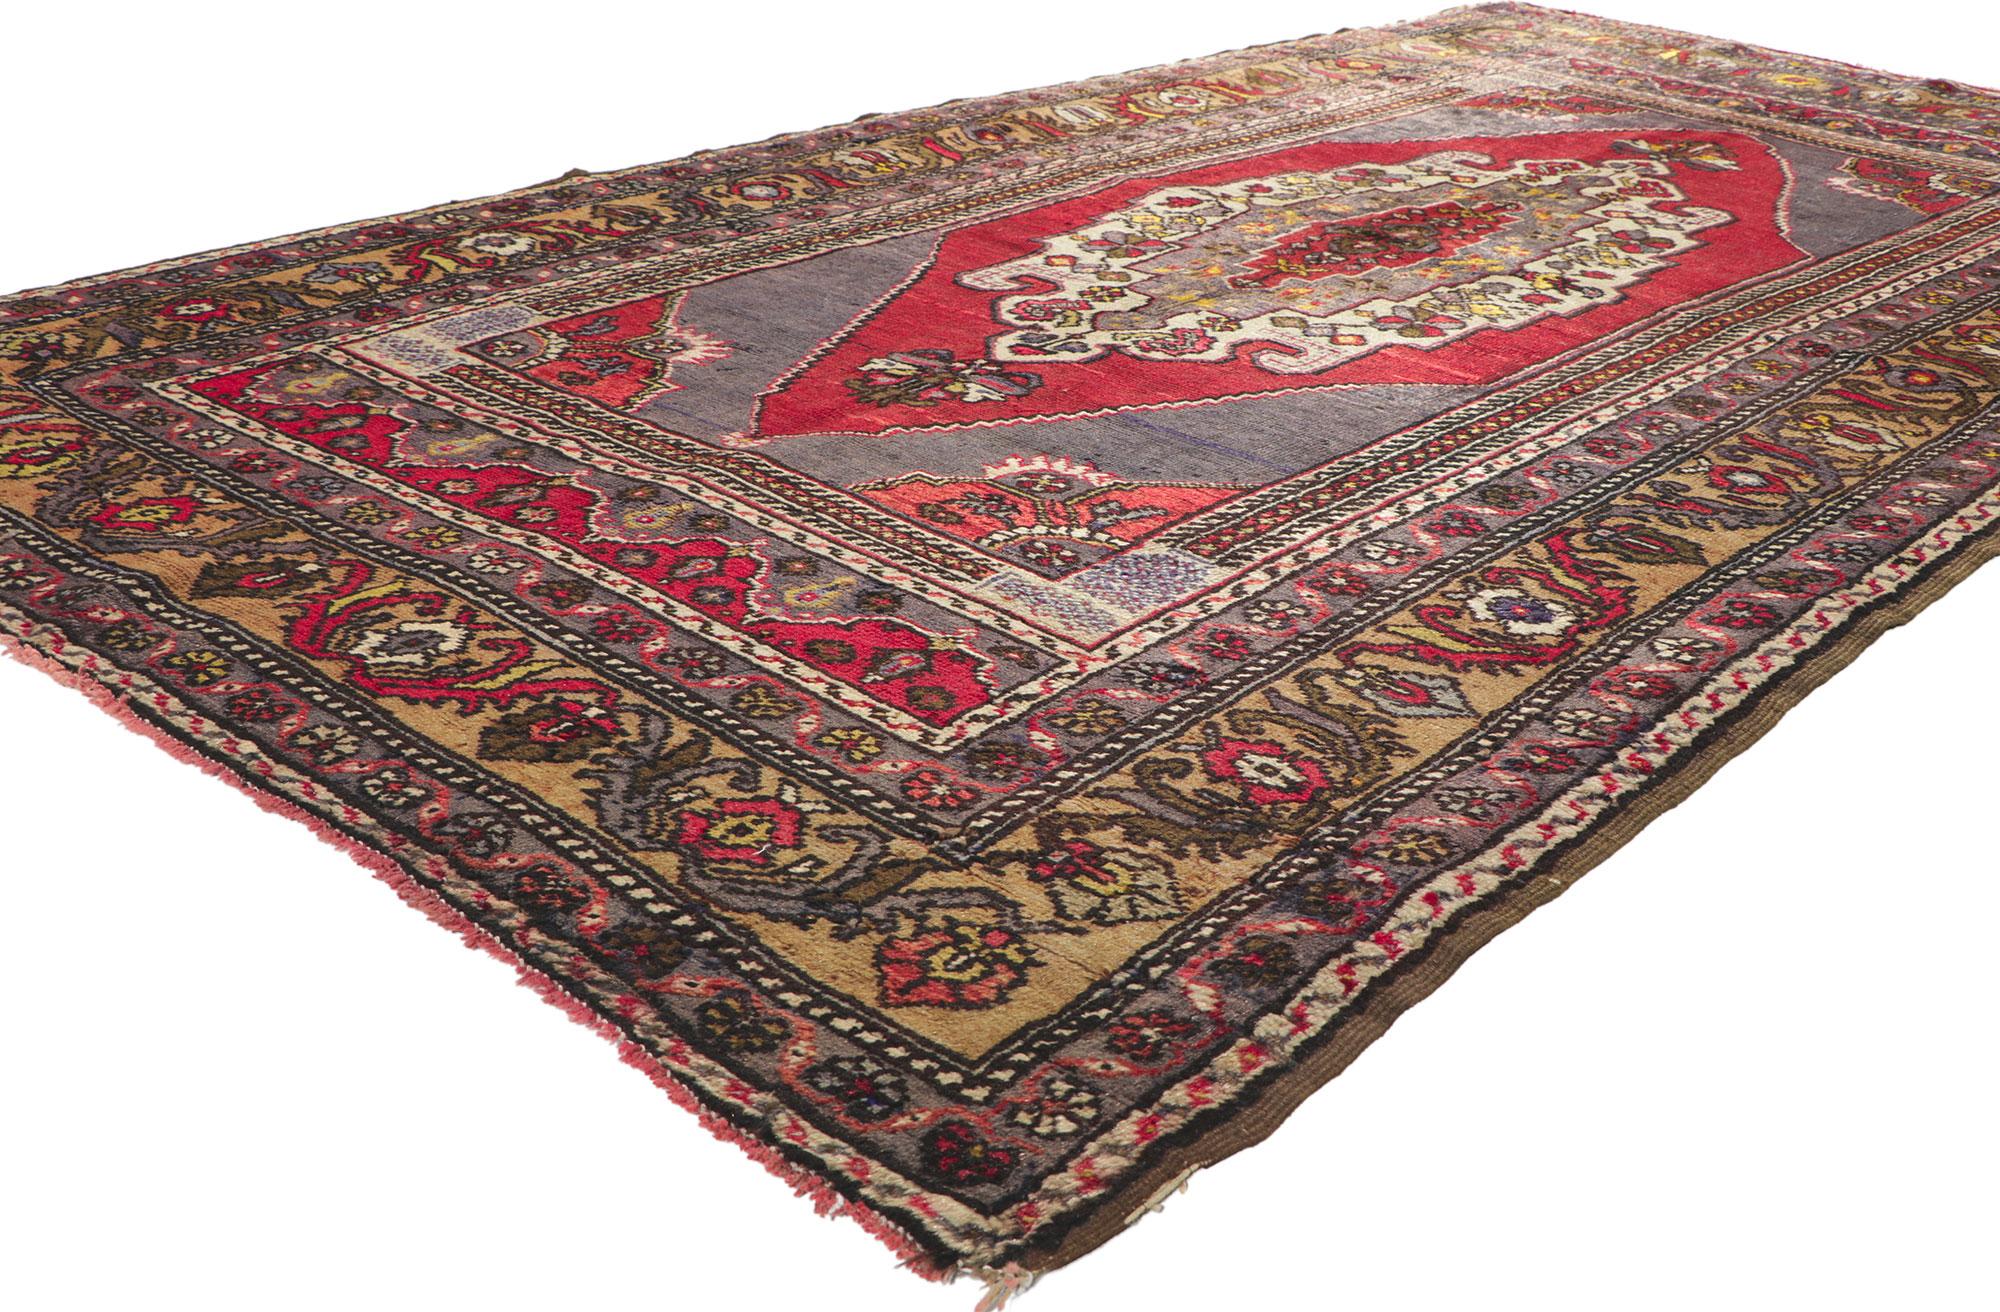 72690 Vintage Türkisch Oushak Teppich, 04'07 X 08'07.
Dieser handgeknüpfte Vintage-Oushak-Teppich aus Wolle besticht durch seinen zeitlosen Stil und seine unglaubliche Detailtreue und Textur. Das botanische Design und die reiche Farbpalette, die in